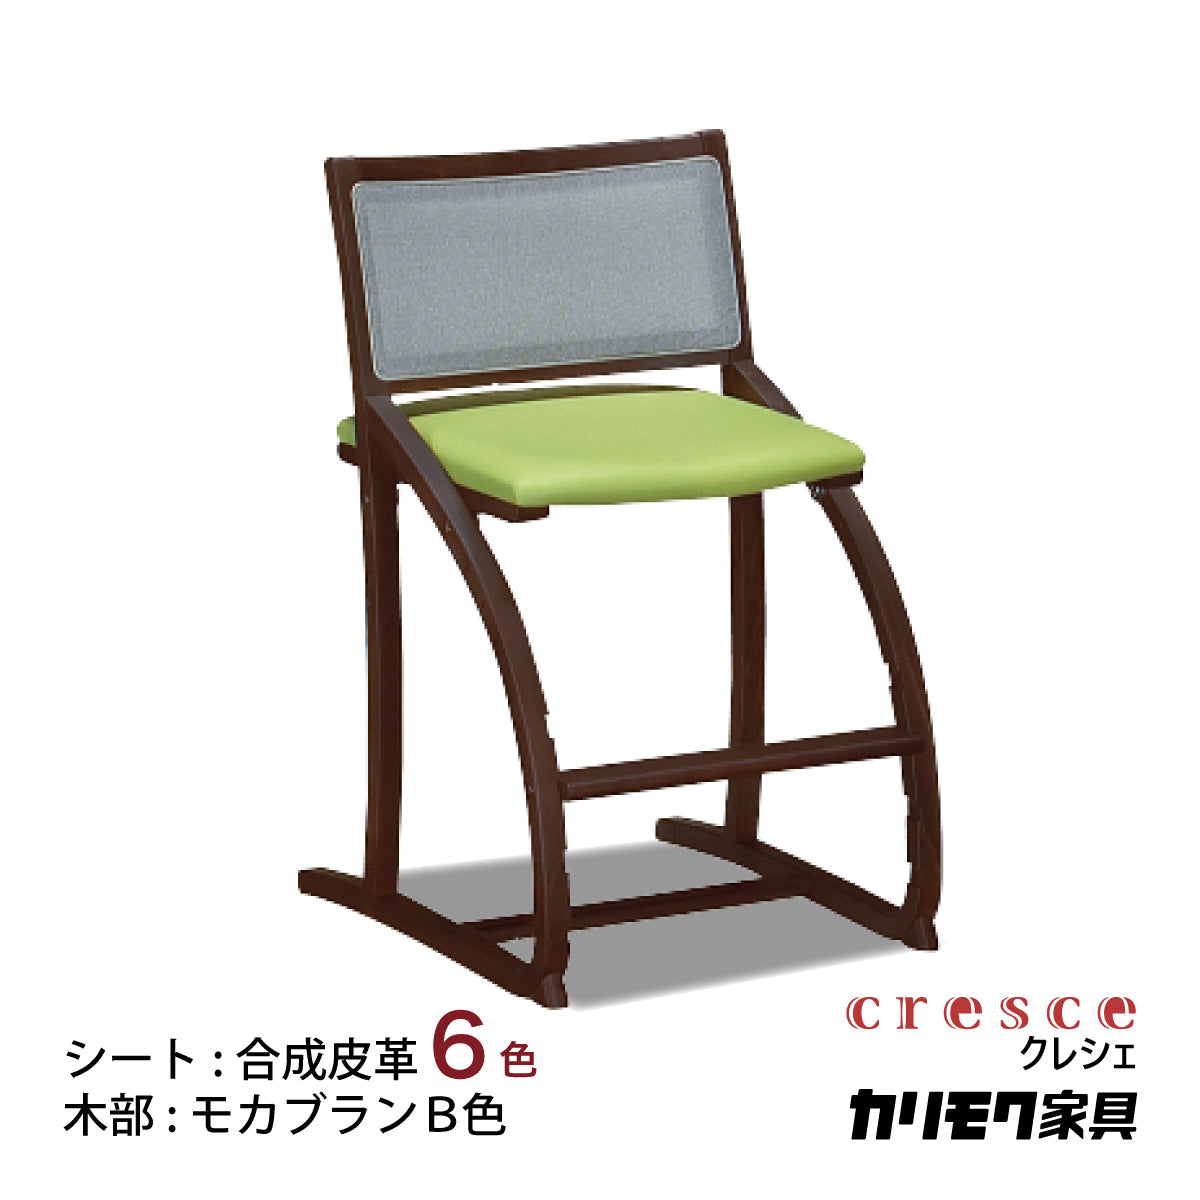 カリモク クレシェ XT2401 モカブラウン色 デスクチェア 学習椅子 人気